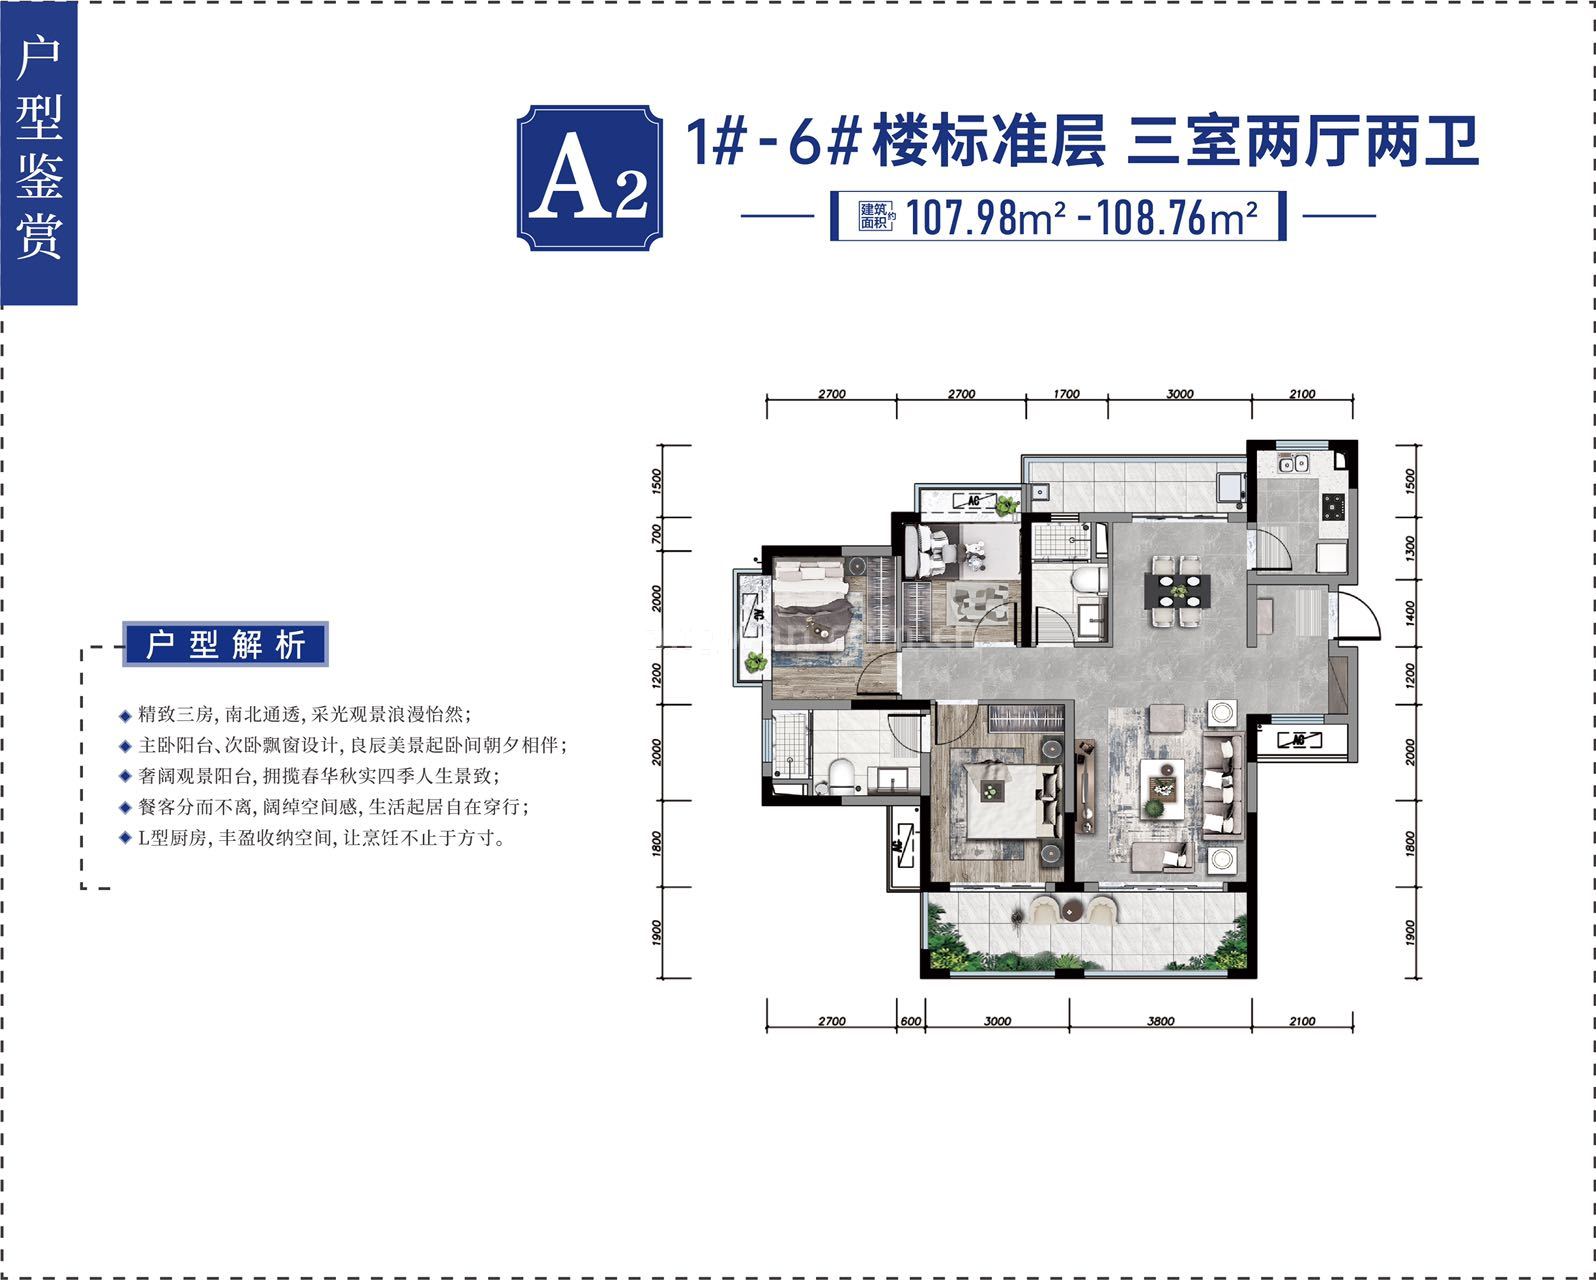 龙海泉城 小高层 A2户型 三室两厅两卫 建筑面积107㎡-108㎡